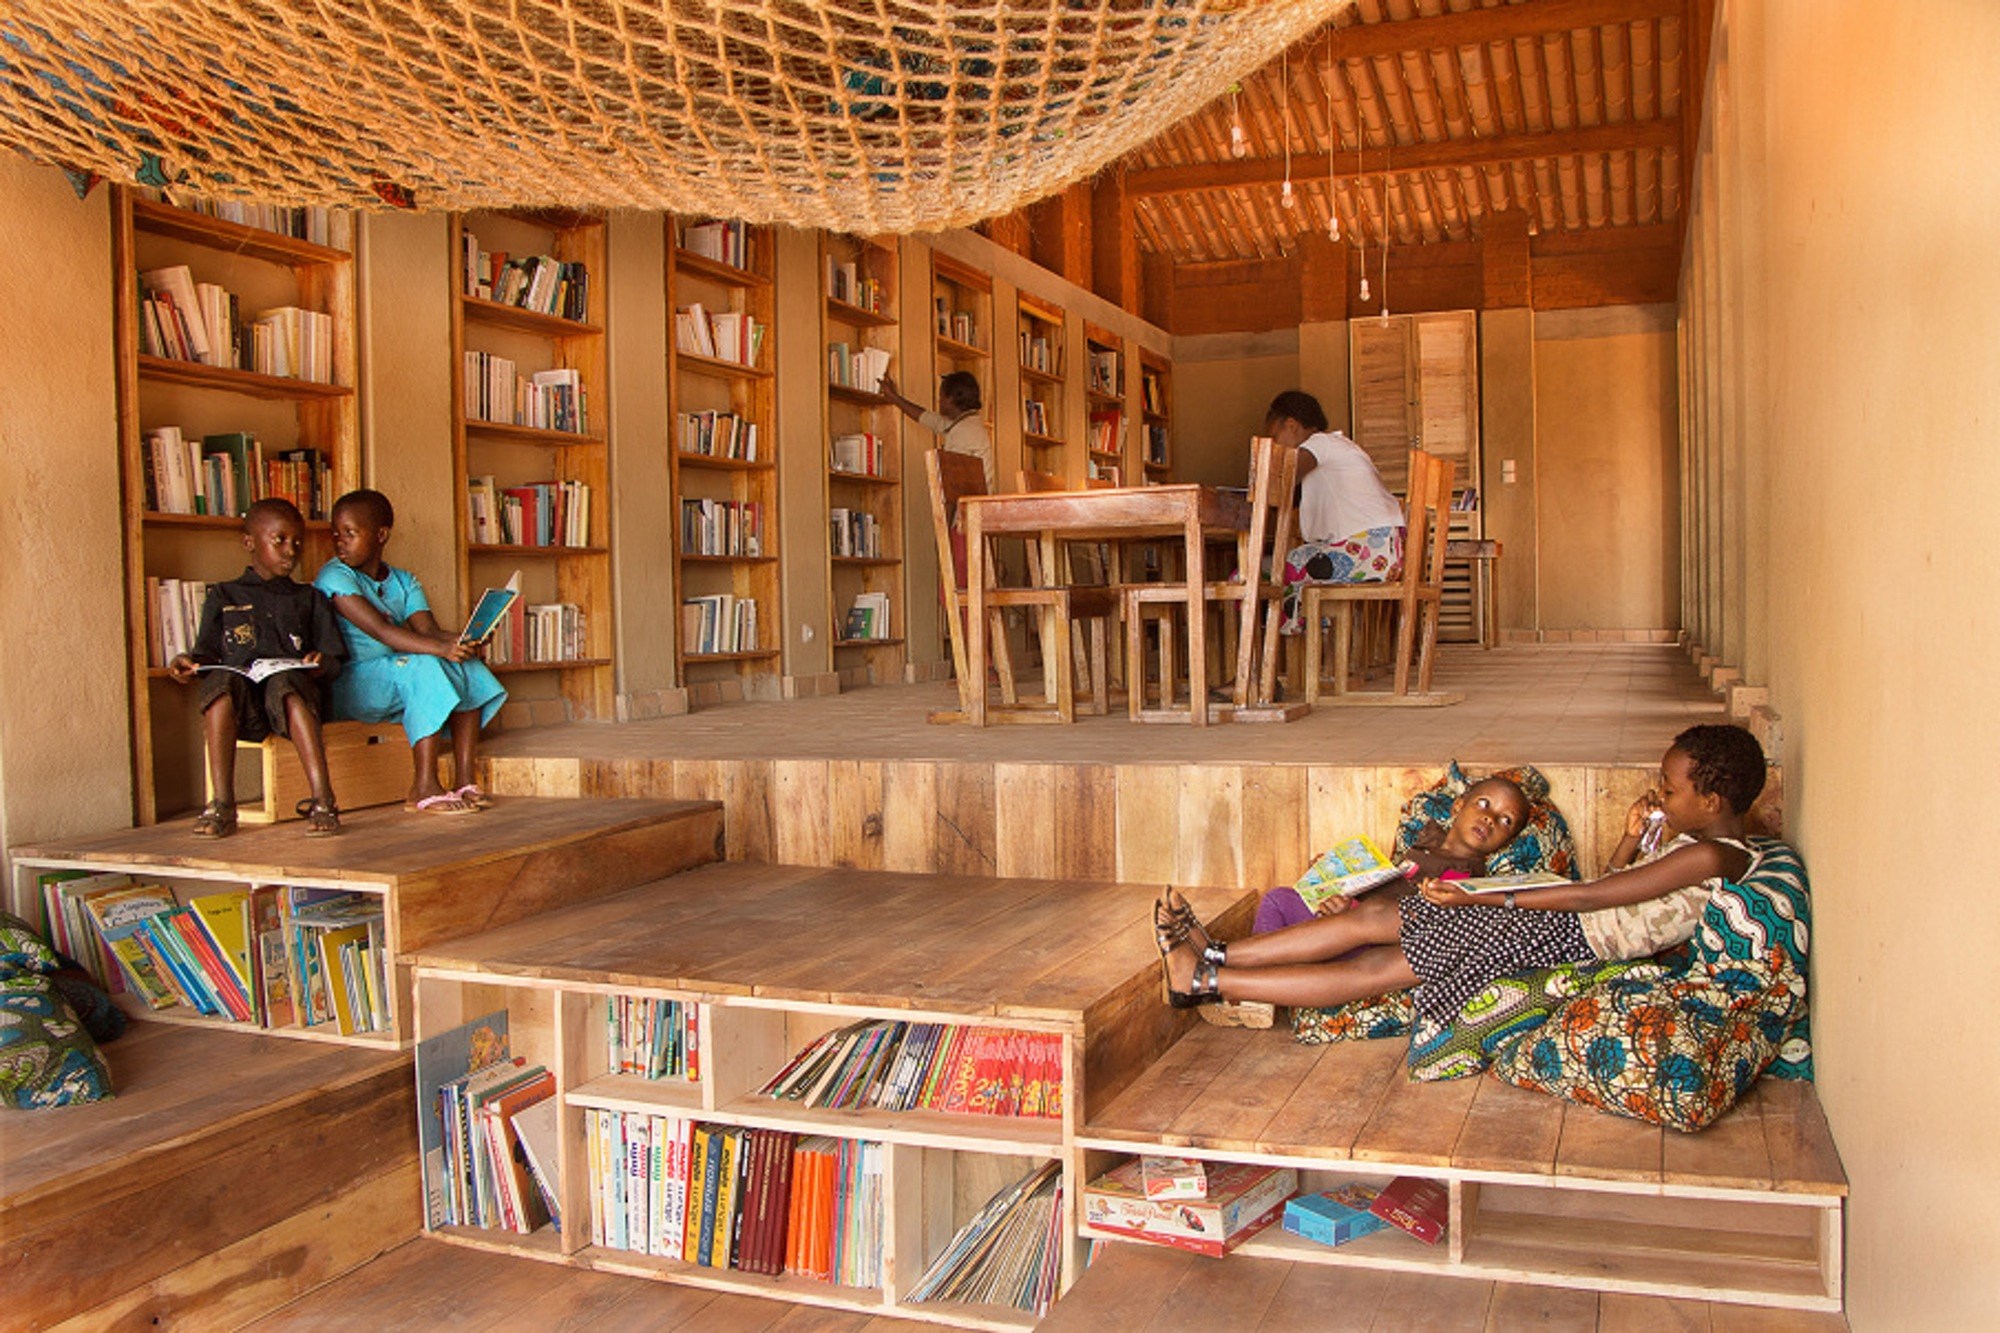 Kids library. Библиотечное пространство для детей. Современная детская библиотека. Идеи для библиотеки. Детская комната в библиотеке.